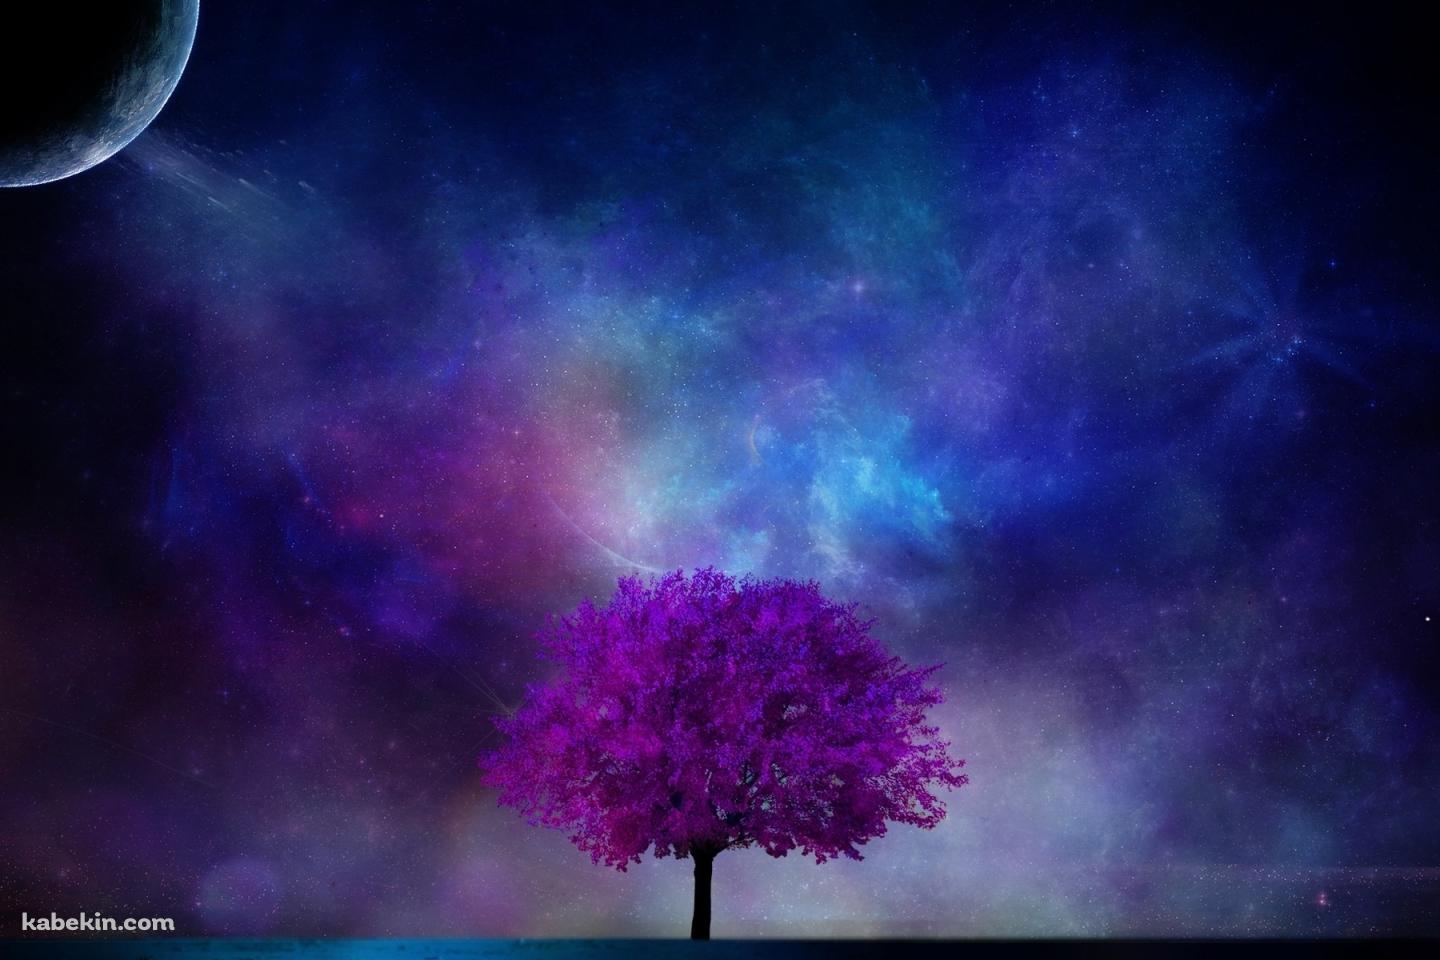 紫の木と銀河の壁紙(1440px x 960px) 高画質 PC・デスクトップ用